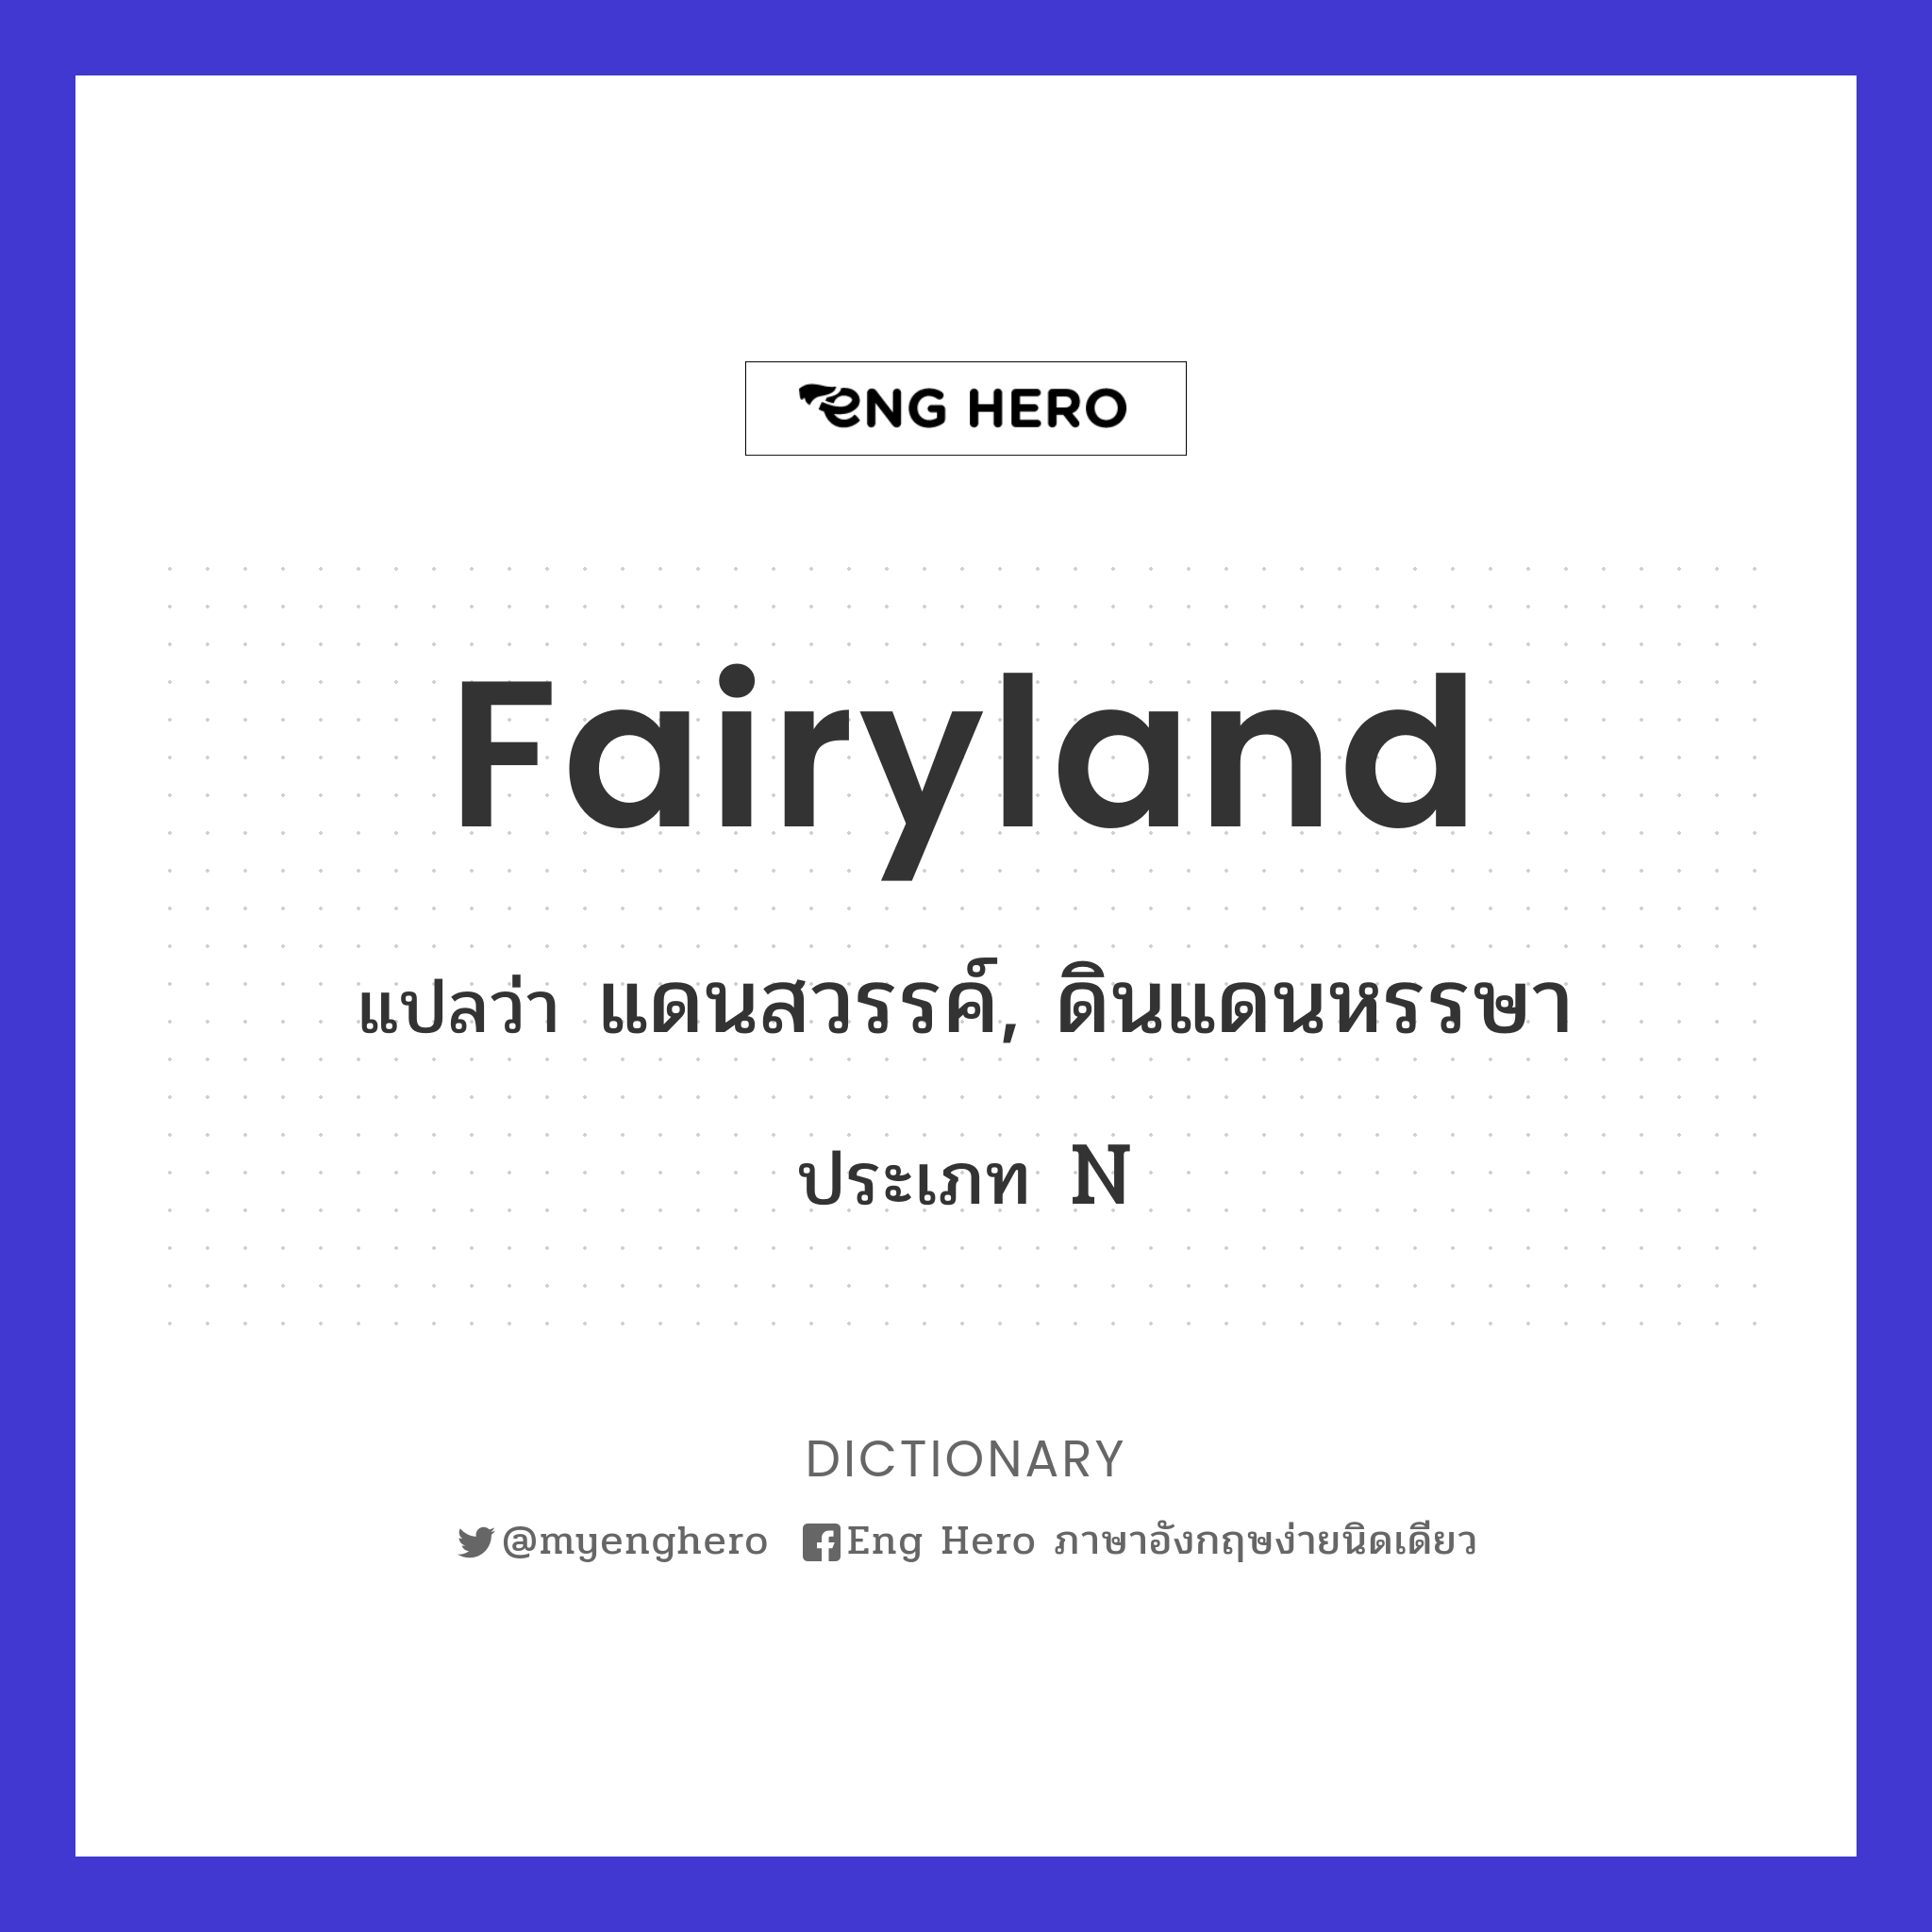 Fairyland แปลว่า แดนสวรรค์, ดินแดนหรรษา | Eng Hero เรียนภาษาอังกฤษ ออนไลน์  ฟรี